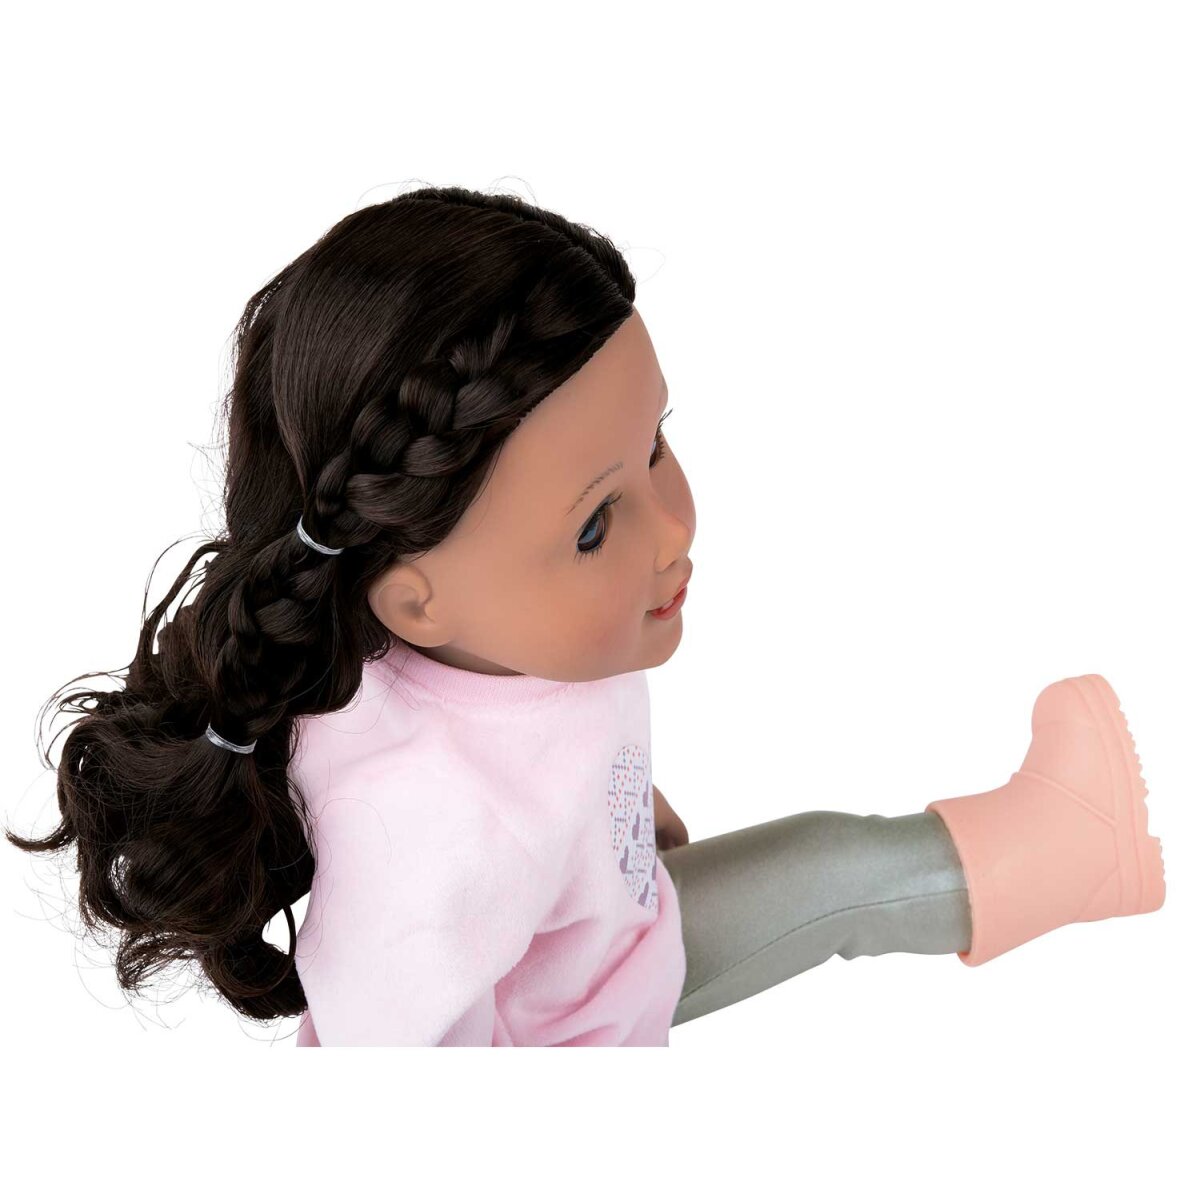 Playtive Puppe »Julia«, mit schönen, dicken Haaren zum Frisieren - B-Ware,  17,99 €